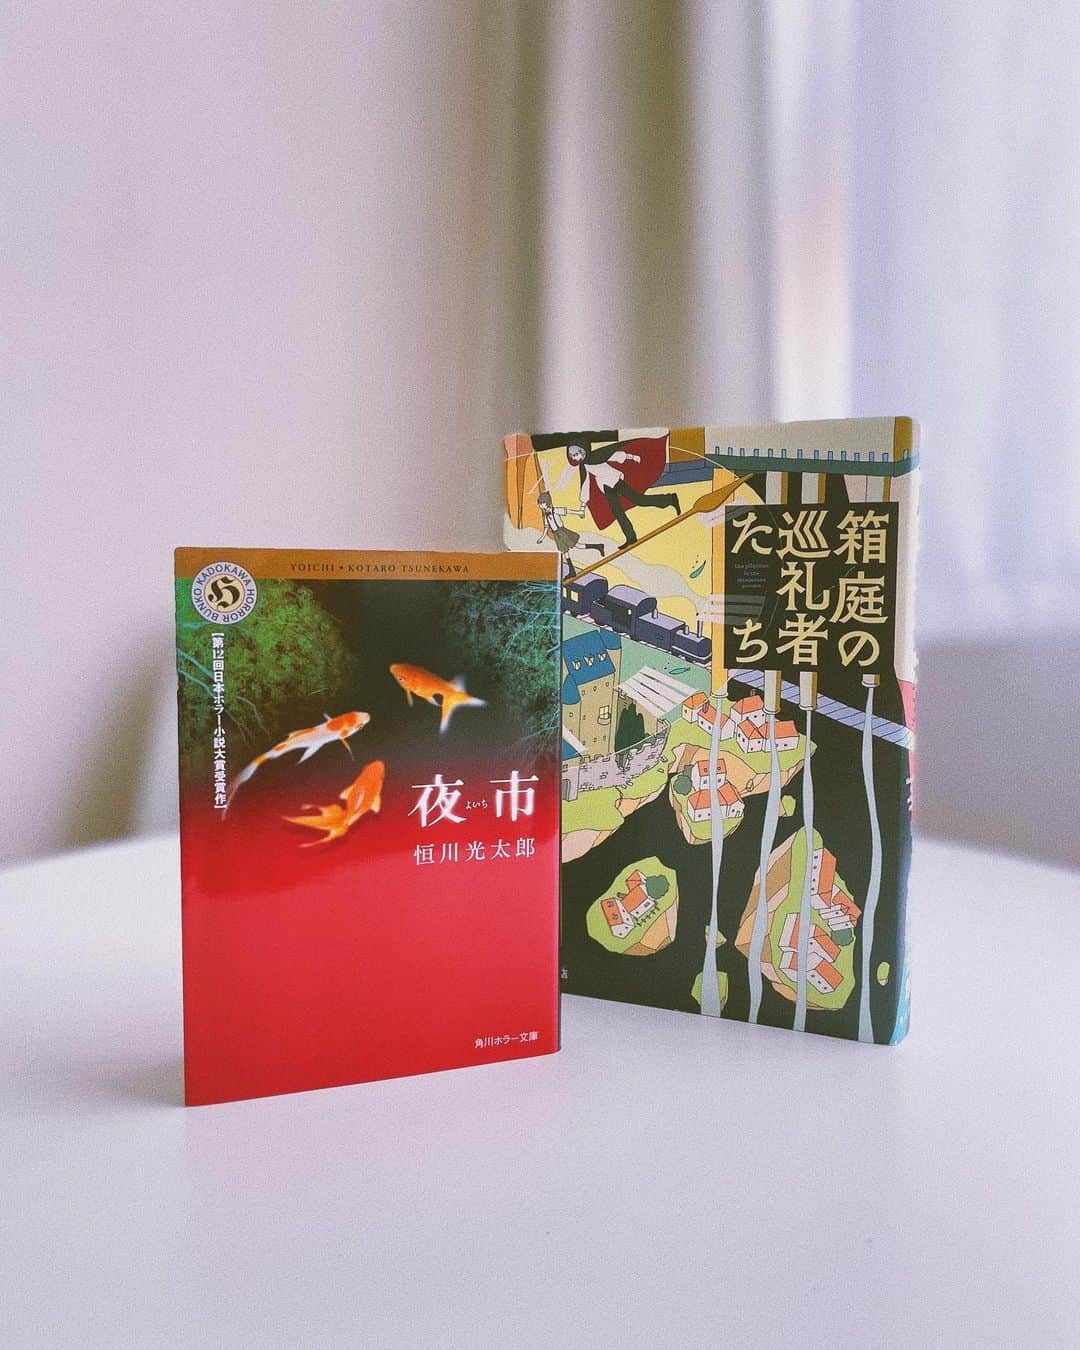 宮司愛海のインスタグラム：「あす朝10:25〜の『タイプライターズ〜物書きの世界〜』ゲストは小説家の恒川光太郎さん、そして恒川作品を愛してやまない声優の斉藤壮馬さんです。 恒川さんの最新作『箱庭の巡礼者たち』の魅力紹介はもちろん、2005年に第12回ホラー小説大賞を受賞した『夜市』から斉藤さんがセレクトしたシーンを、加藤シゲアキさんと一緒に朗読する場面も...！ なんとテレビ初出演という恒川さん。さまざまな素顔を拝見することができました。  また、加藤さんの作家活動10周年特別企画もあります！ 中村文則さん、羽田圭介さんをお迎えして、加藤さんの10年を振り返ります。ぜひご覧ください！  📚『箱庭の巡礼者たち』 まるで、数千年もの時間を超えて世界じゅうを冒険したような壮大な気分になりました。いくつもの物語が、時代を超えてつながり合う快感が味わえます。夏休みにもぴったりですよ☺︎  ※番組は関東ローカル放送となります。ご了承ください。 見逃し配信あります。  #恒川光太郎 さん #斉藤壮馬 さん #加藤シゲアキ さん #タイプライターズ #箱庭の巡礼者たち #夜市」